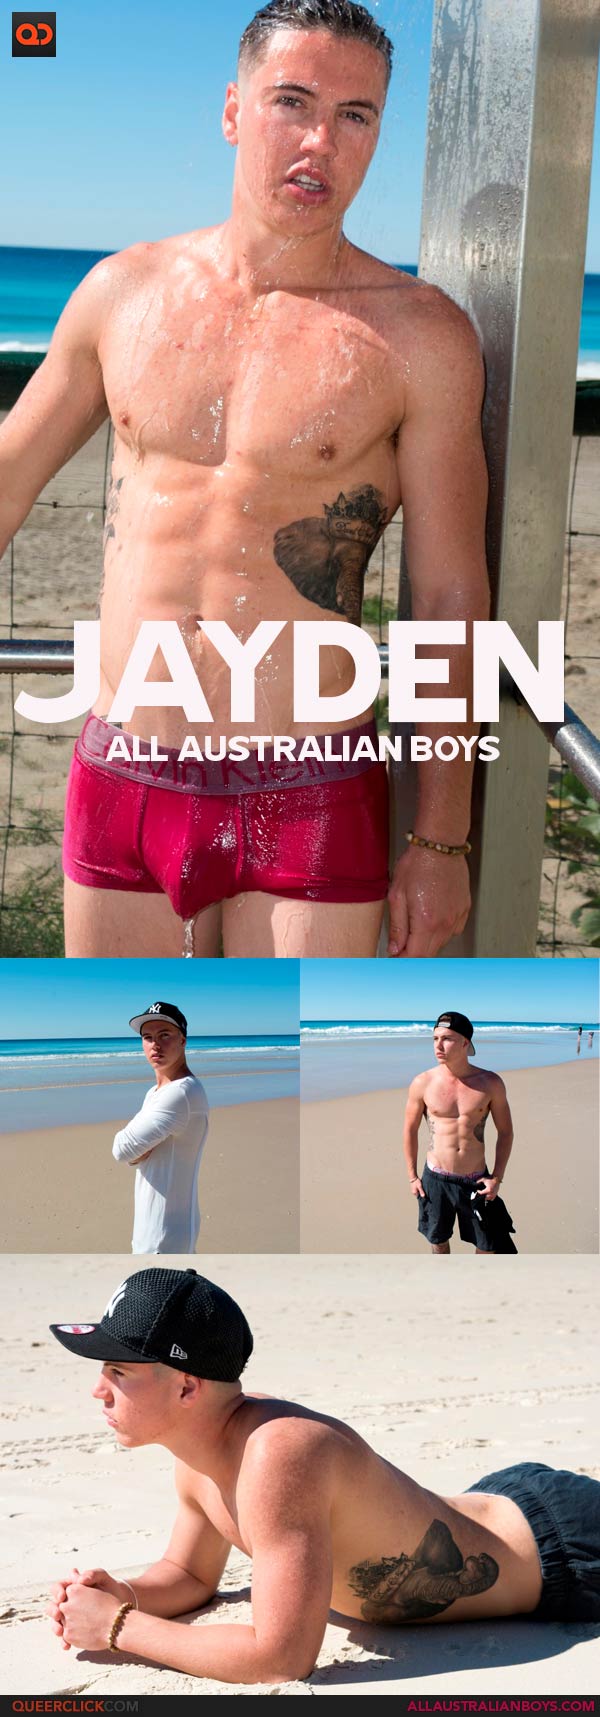 All Australian Boys: Jayden